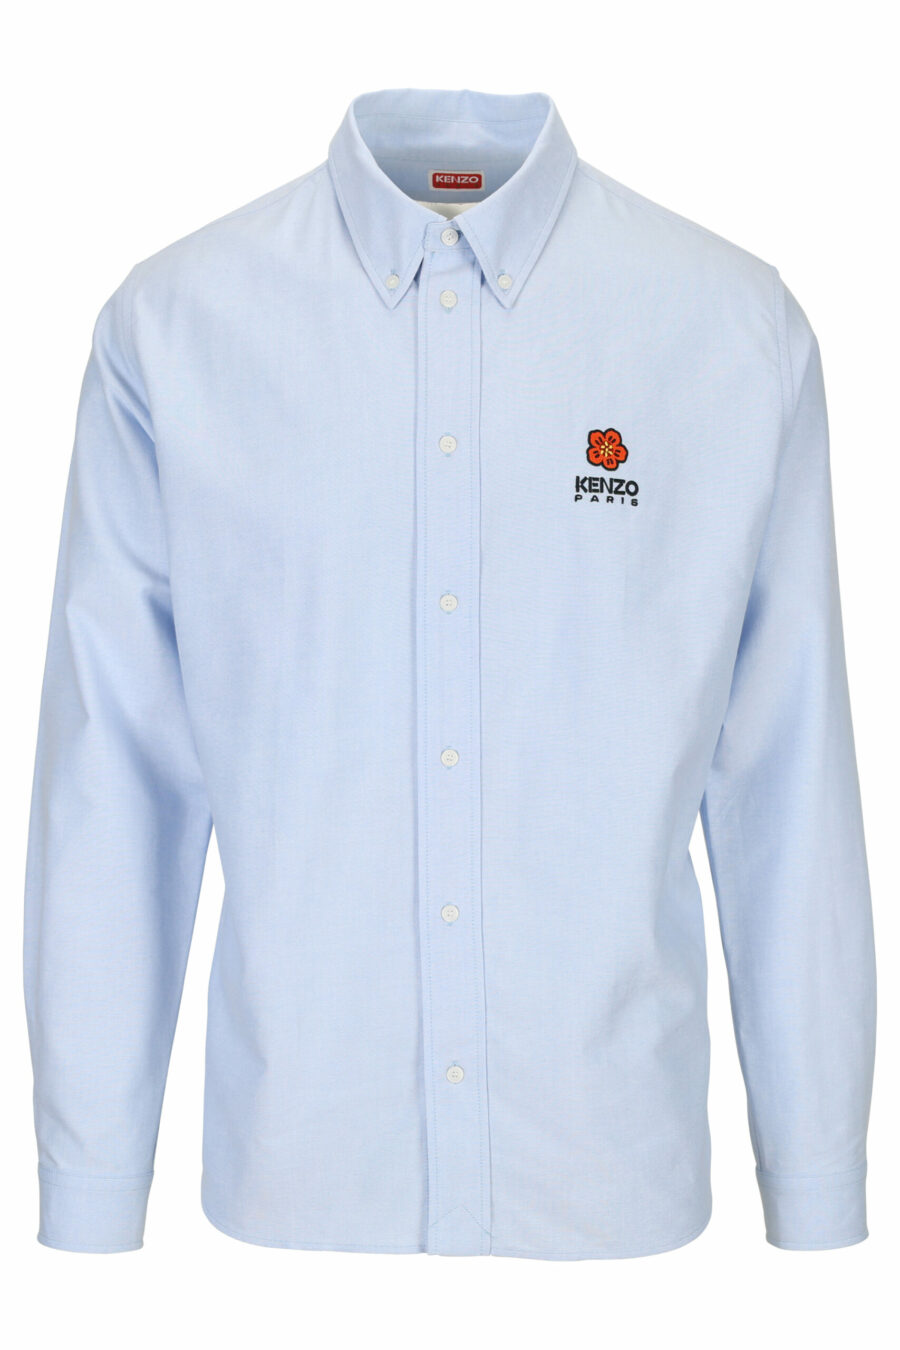 Chemise bleu clair avec logo "boke flower" - 3612230432536 à l'échelle